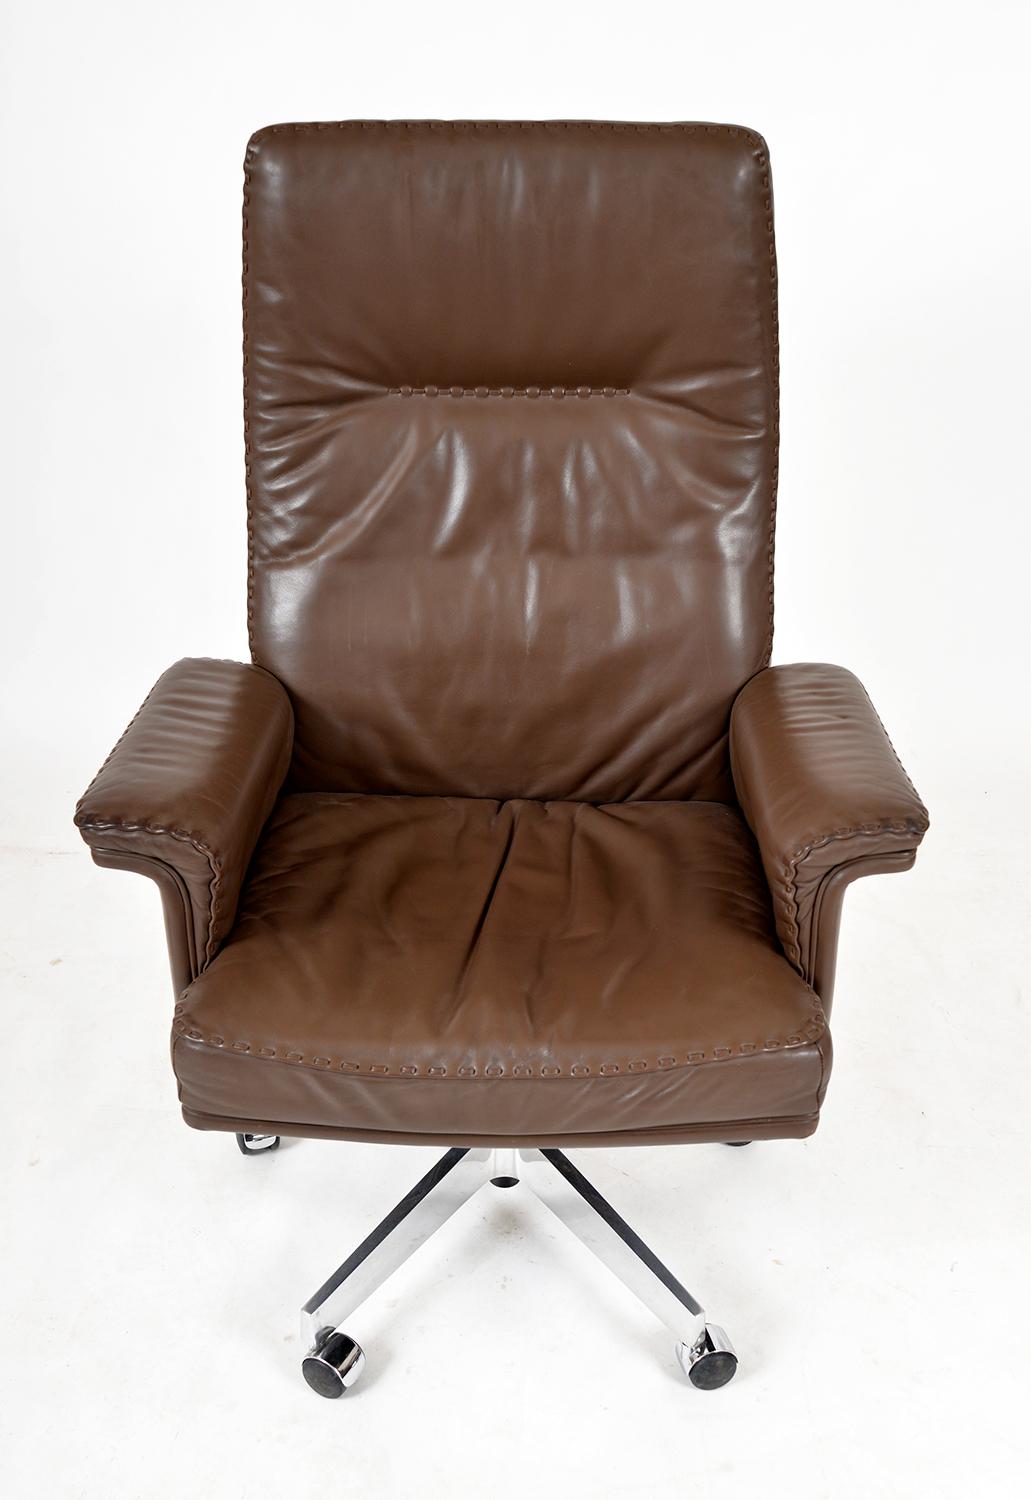 Aluminum 1970s Swiss De Sede Ds 35 Executive Swivel Leather Office Chair Armchair Castors